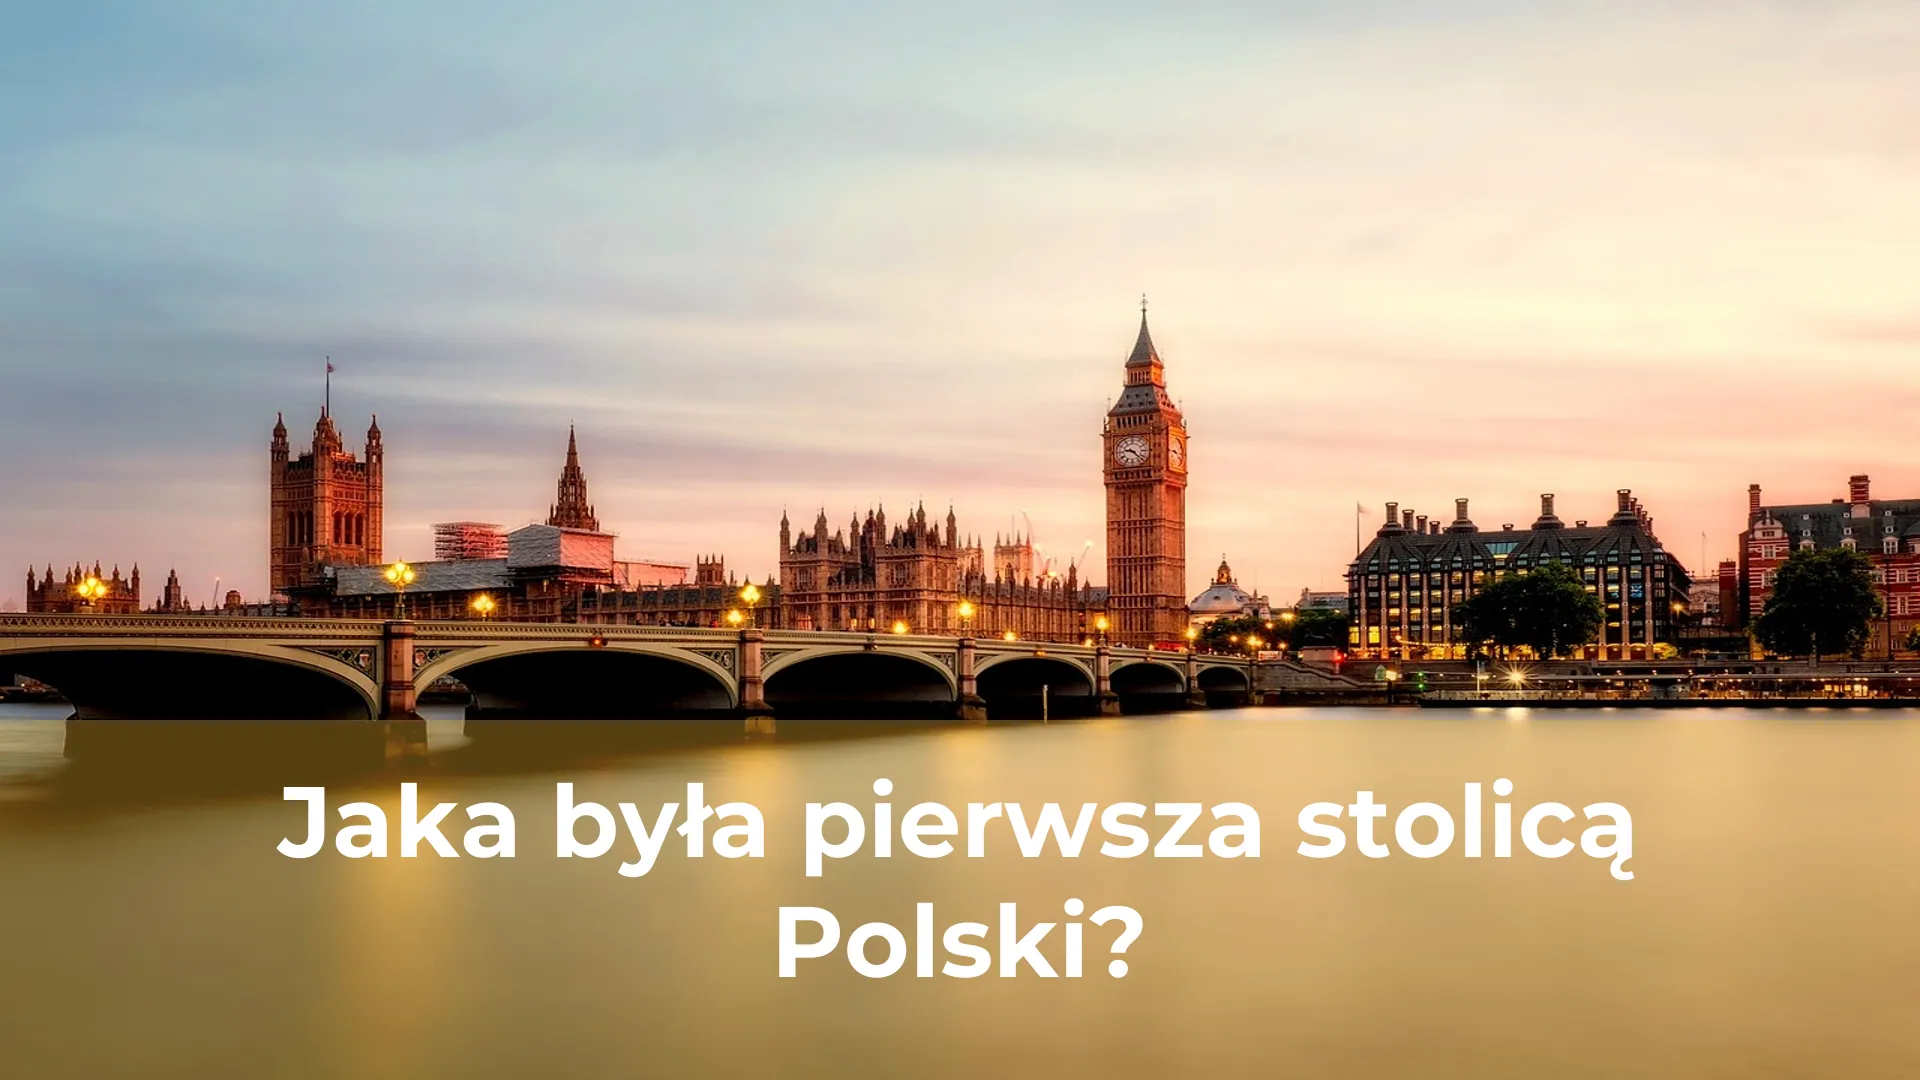 Jaka była pierwsza stolicą polski